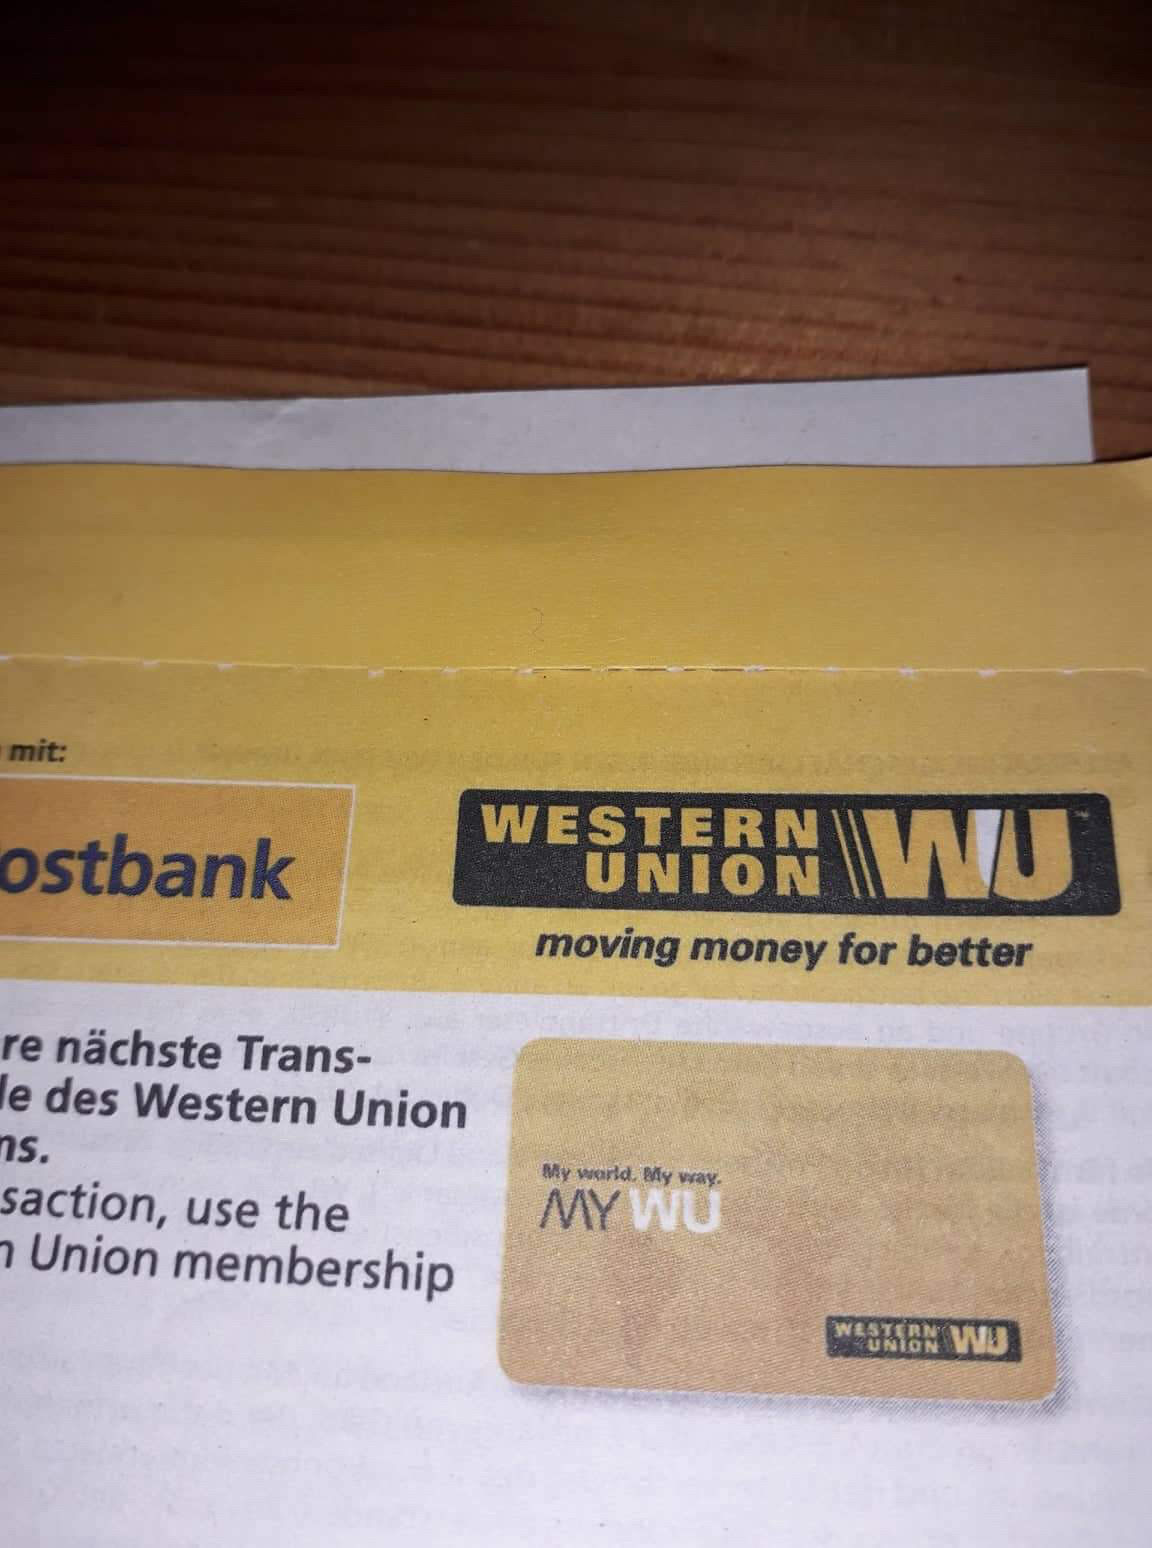 Anh em thường hay nhận tiền gửi nước ngoài về bằng wester union ở ngân hàng nào vậy.